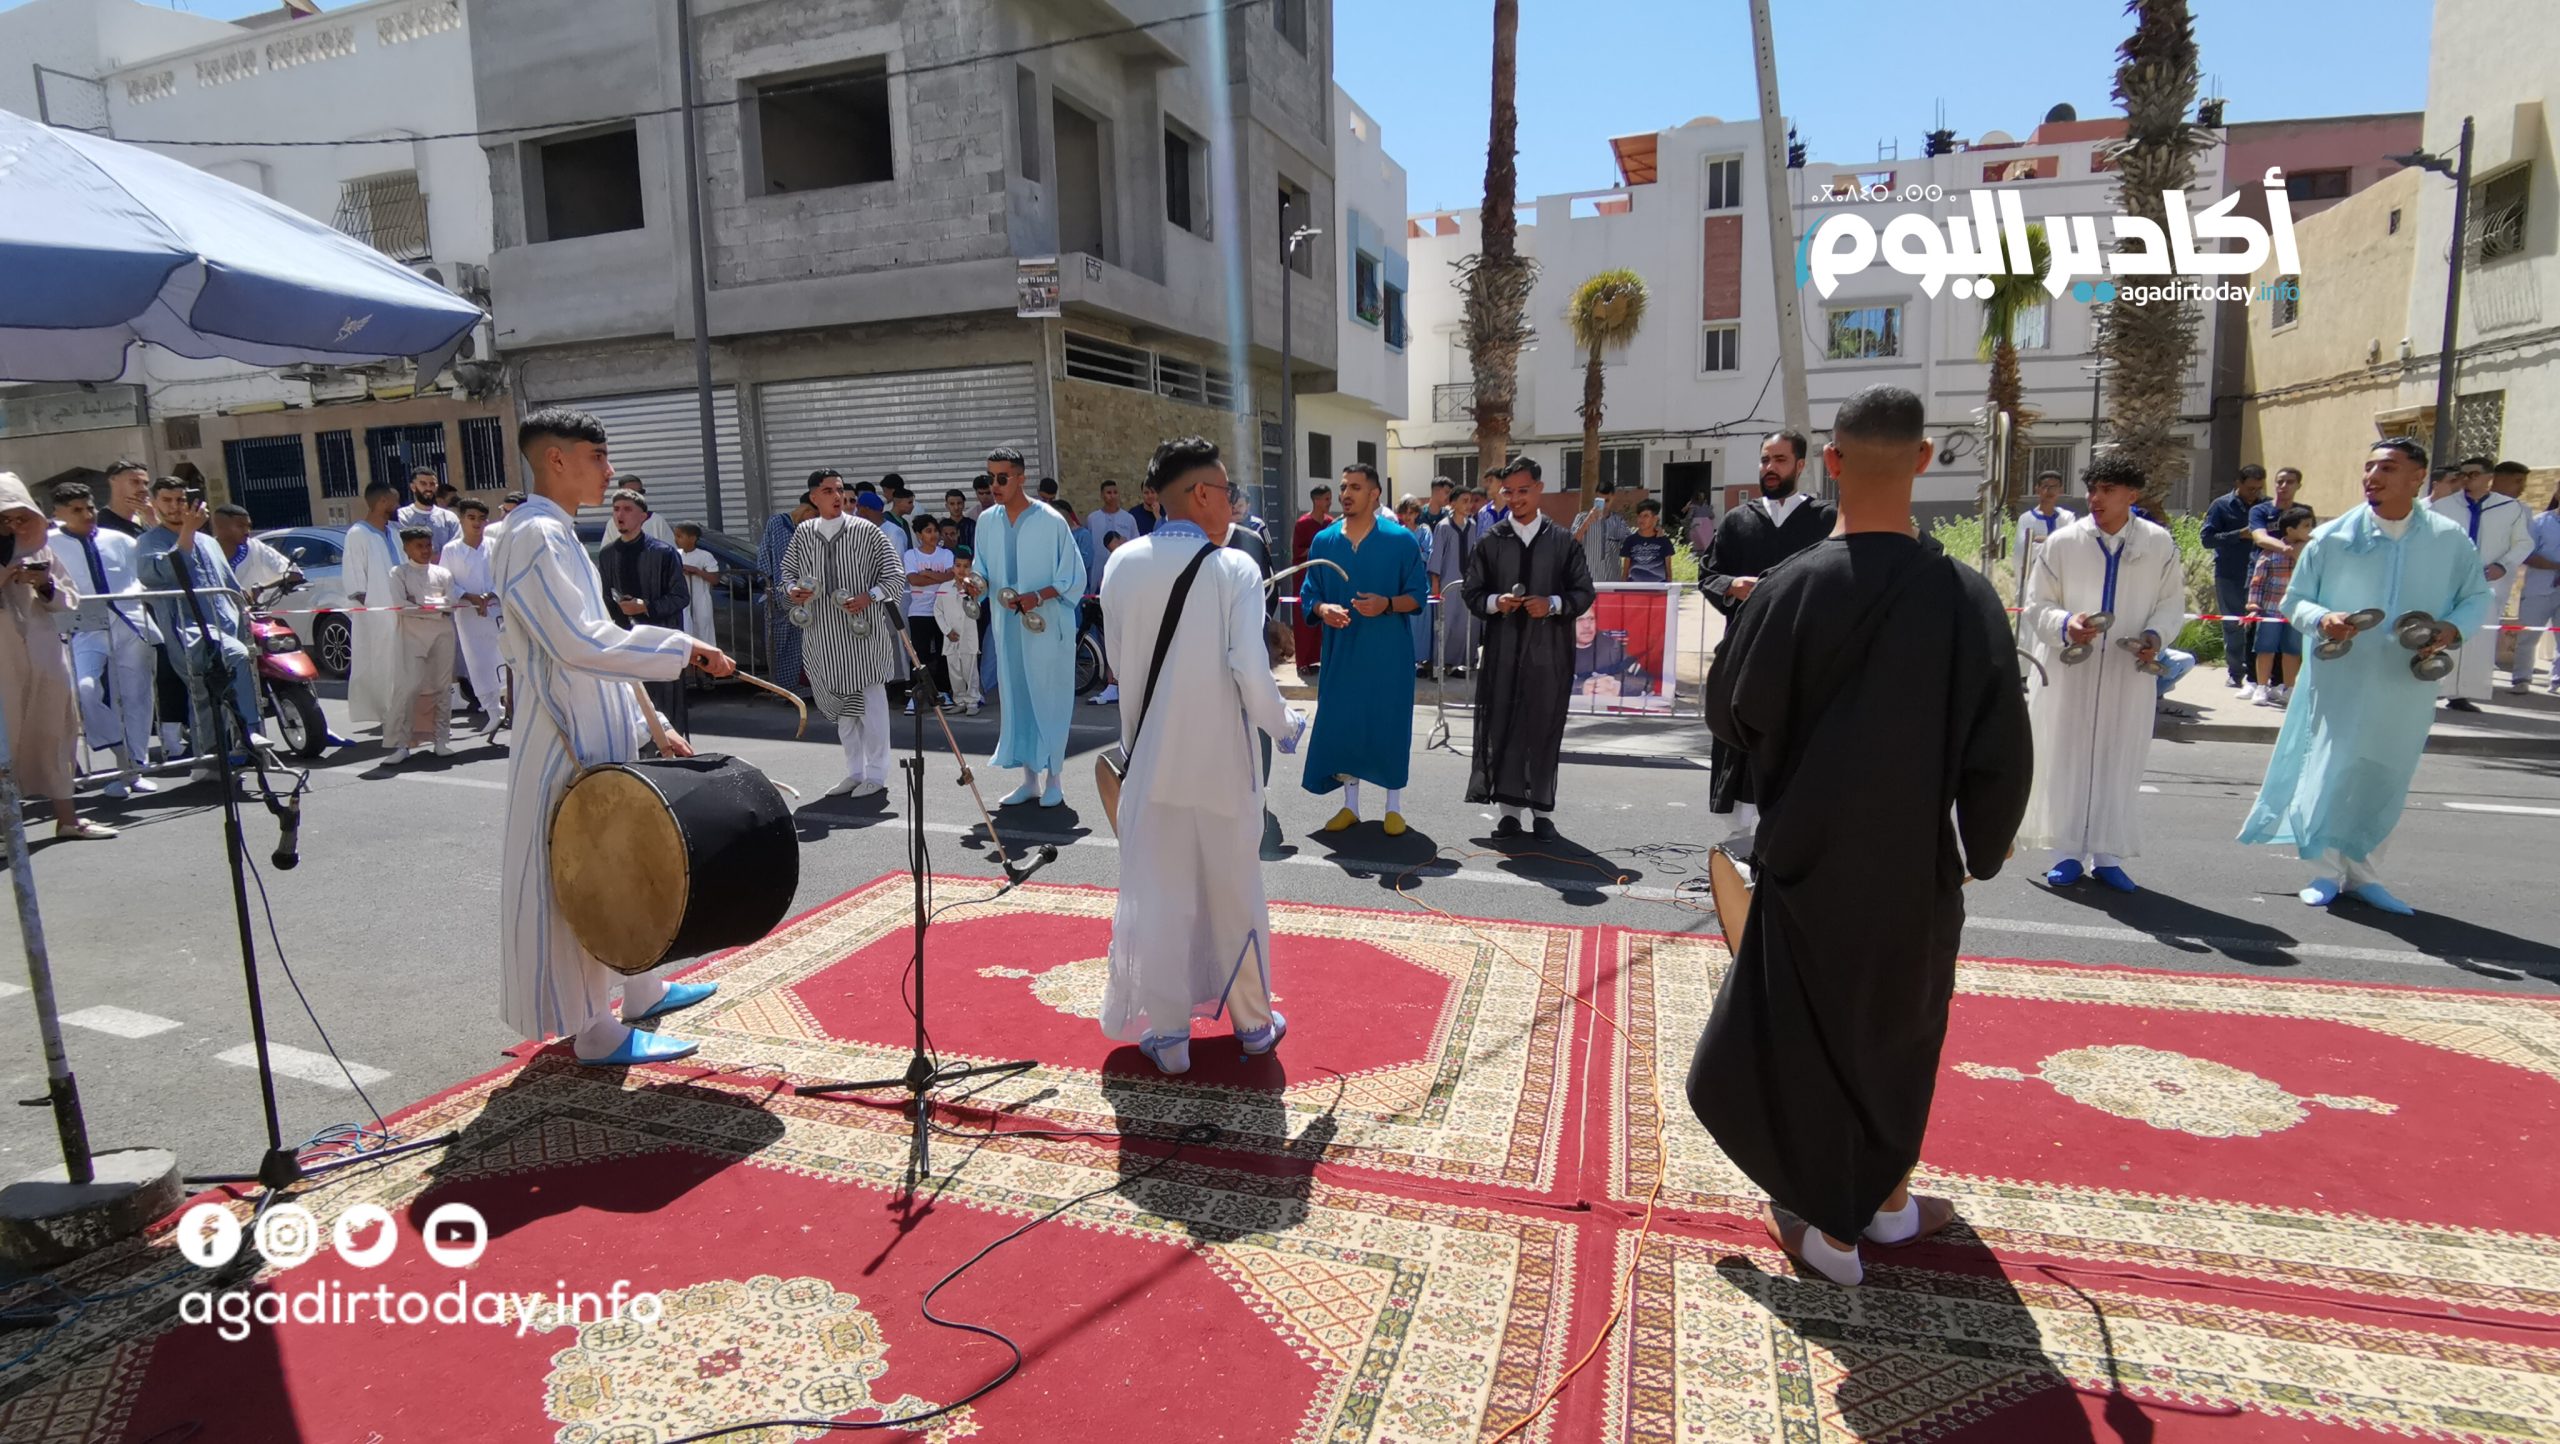 بالفيديو : شباب حي بوتشكات يبدعون بأهازيج فلكلورية بمناسبة عيد الفطر السعيد - AgadirToday